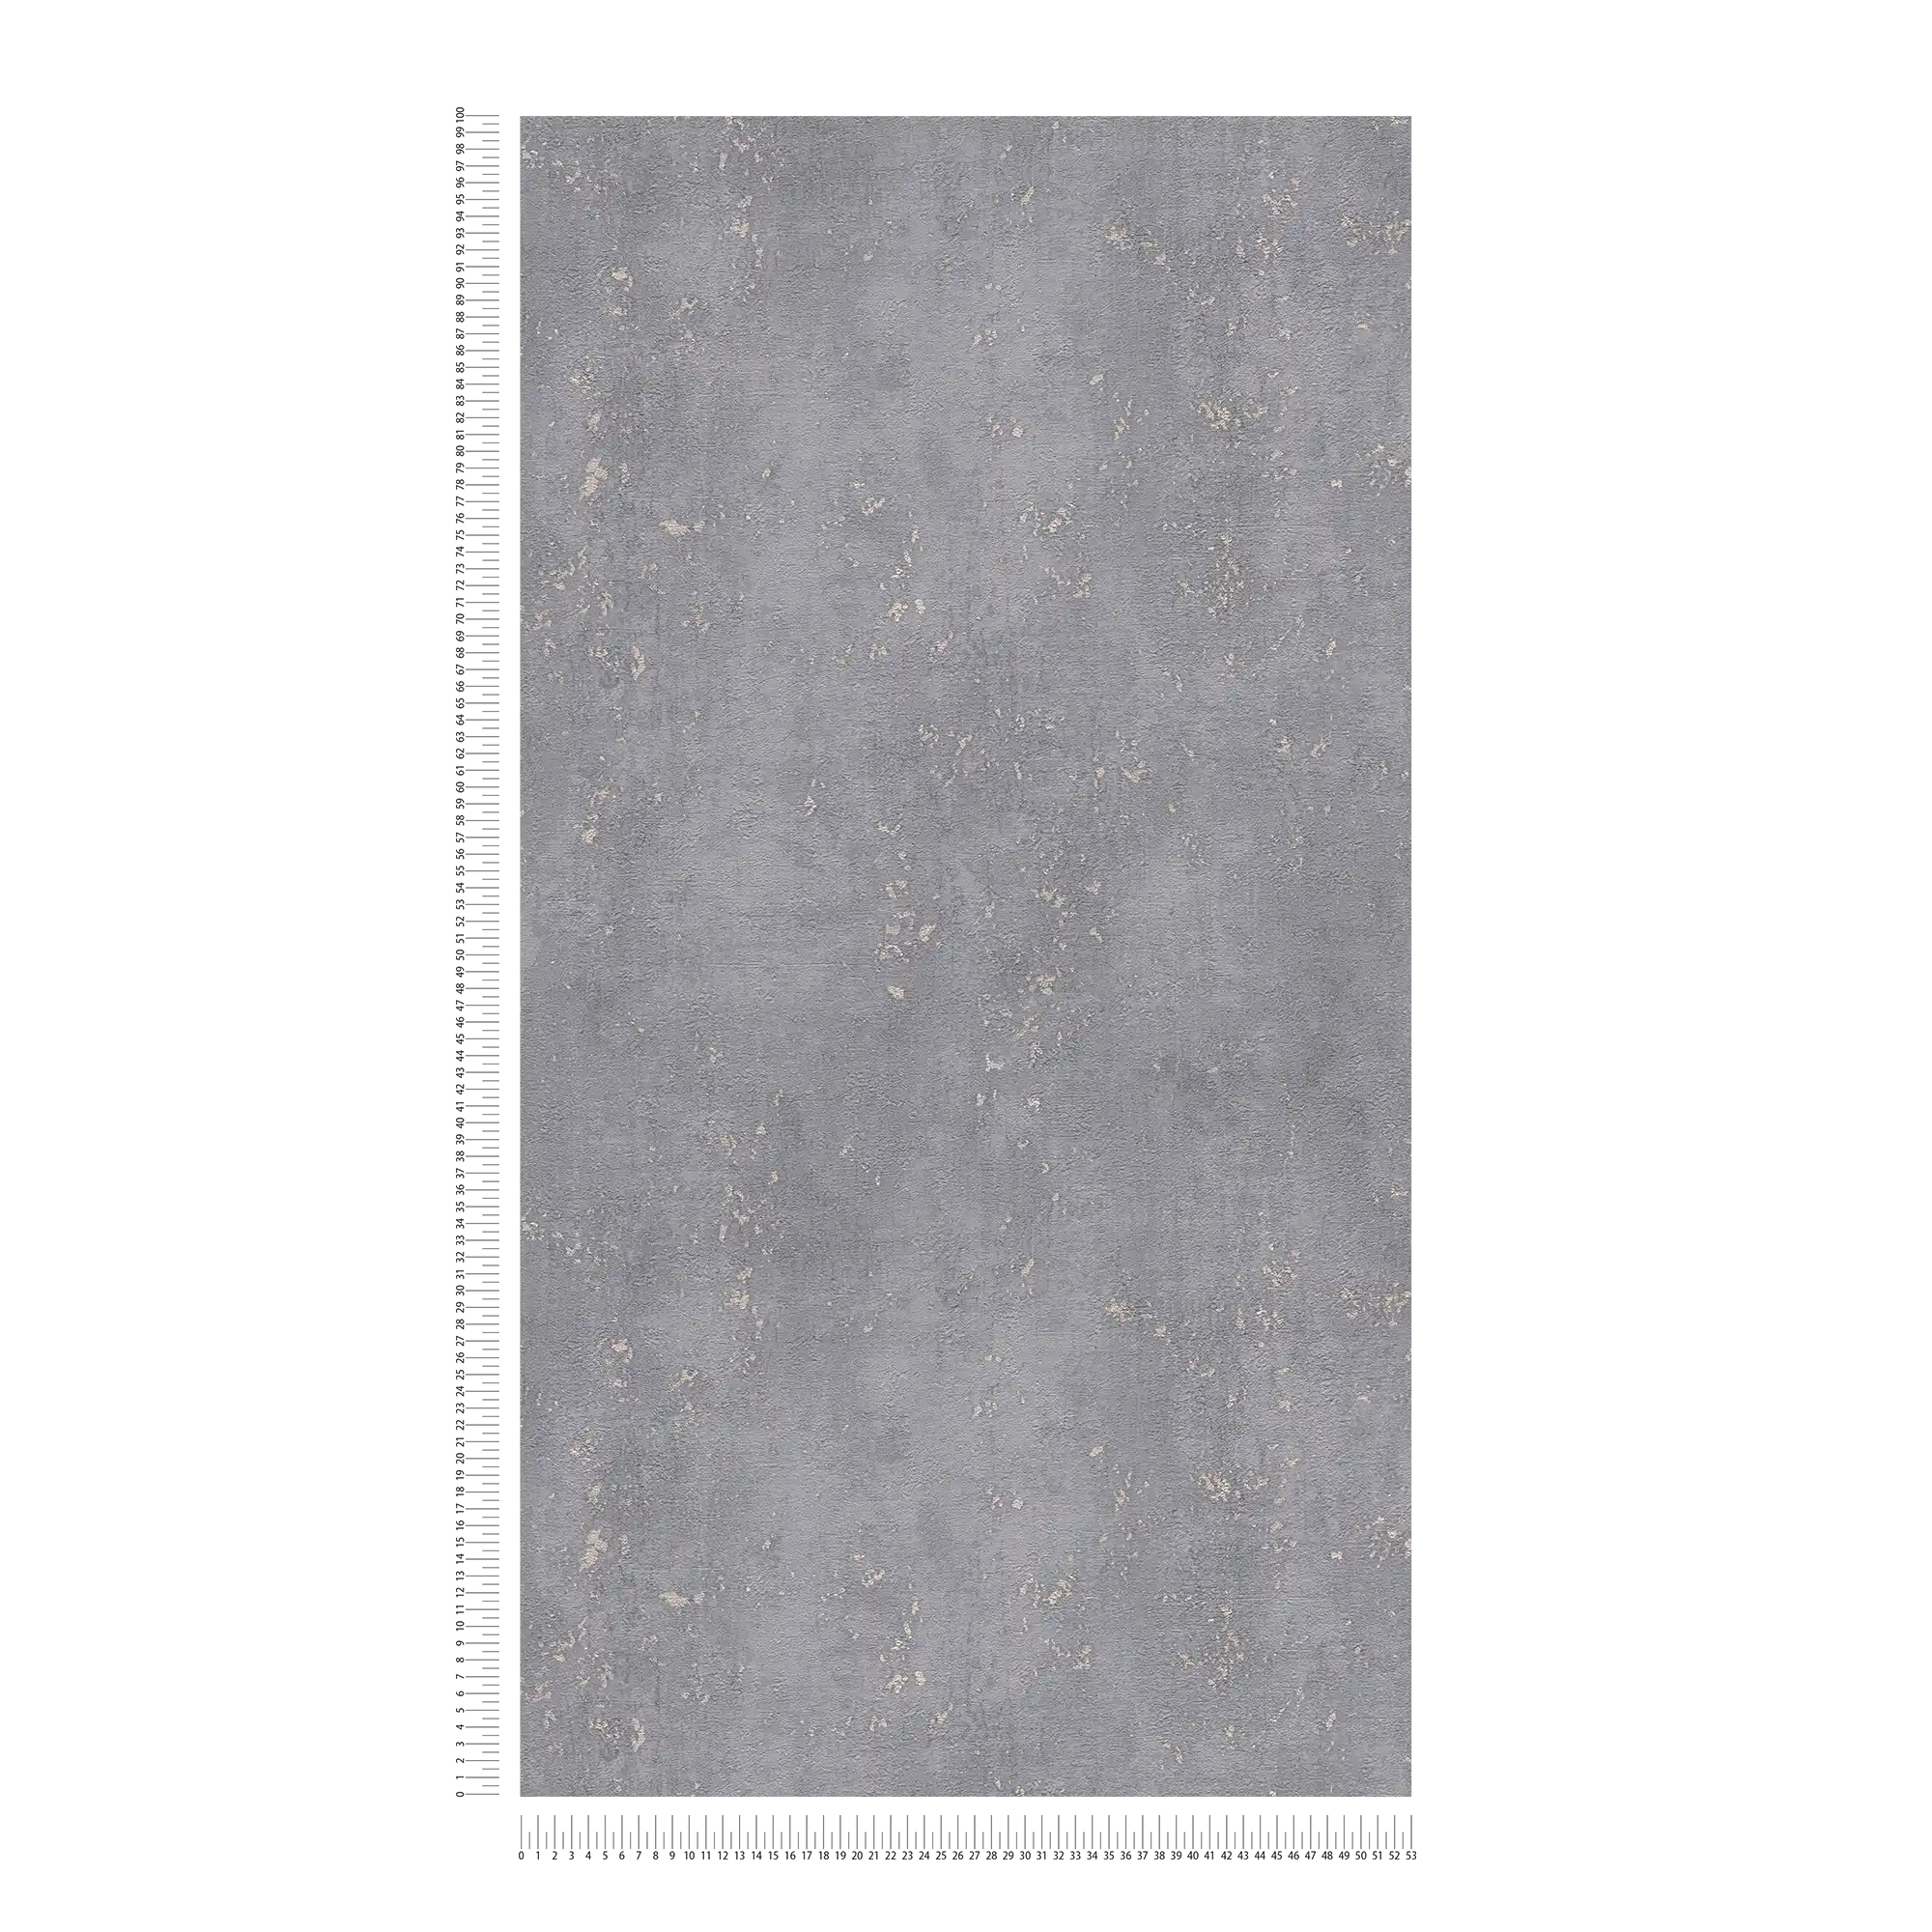             Carta da parati testurizzata effetto intonaco grigio con accenti metallici - grigio
        